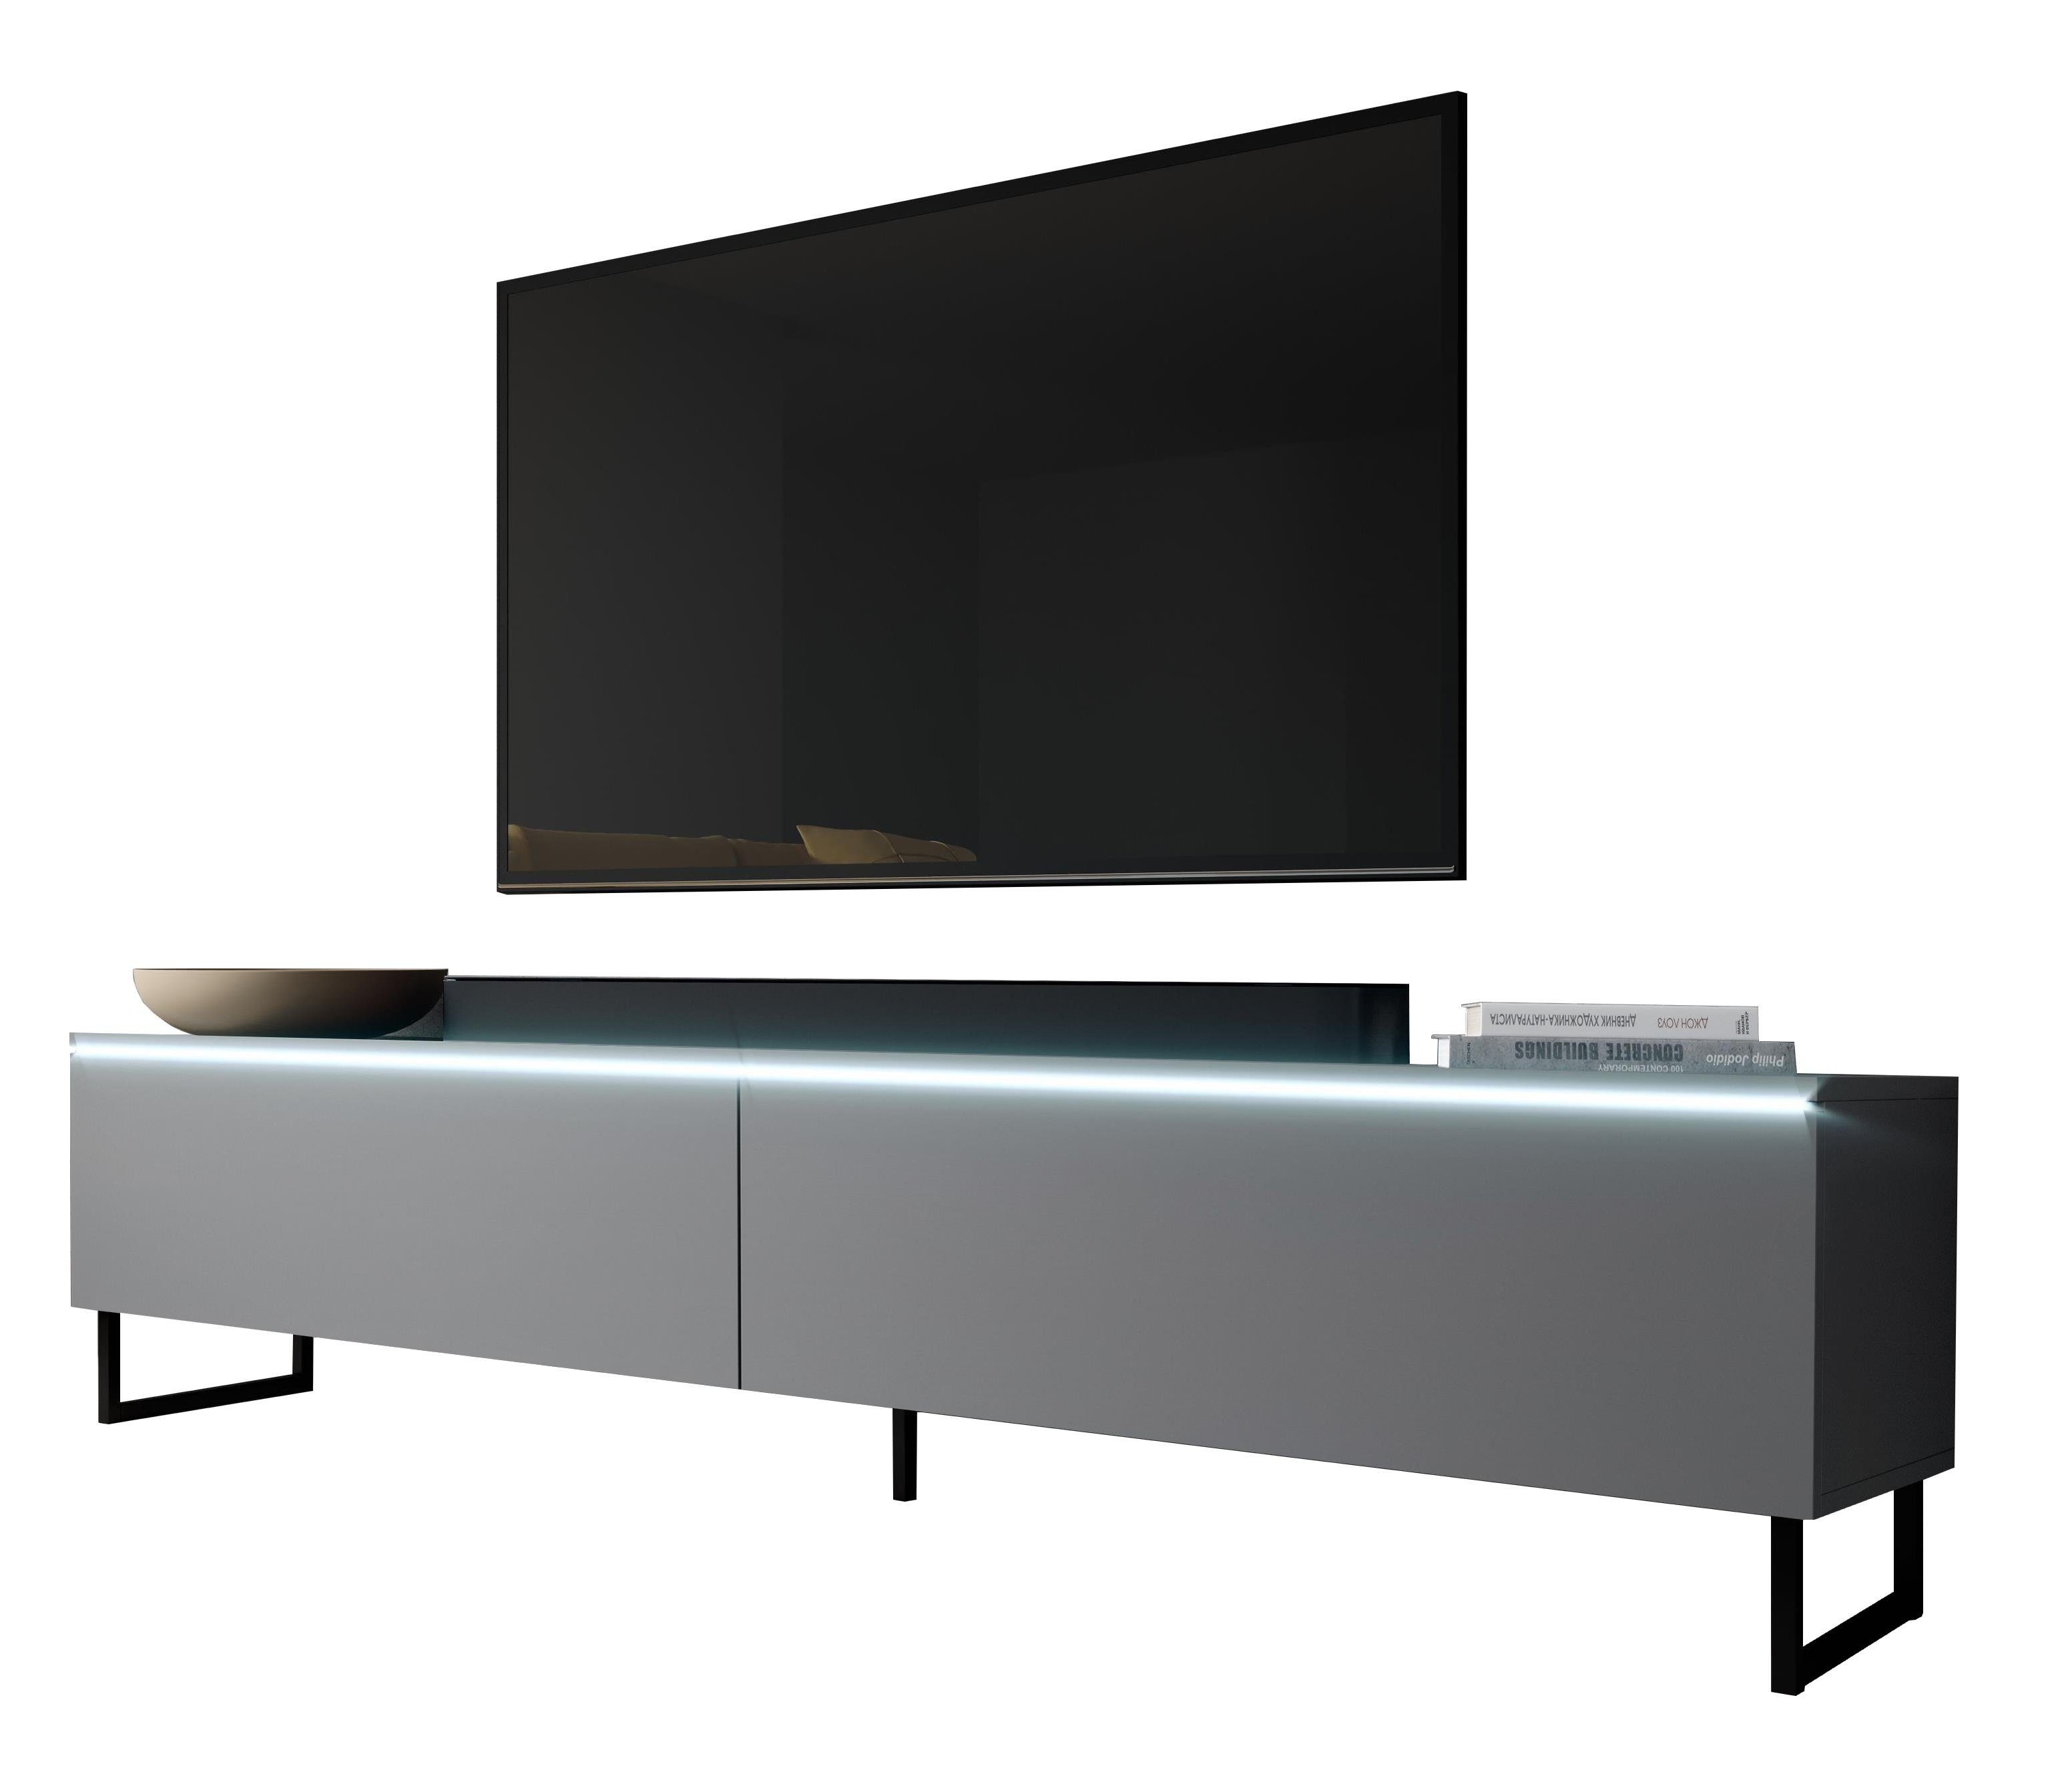 OHNE Metallfüßen x cm H34 mit B180 T32 LED, Furnix TV-Board BARGO Anthrazit TV-Schrank x